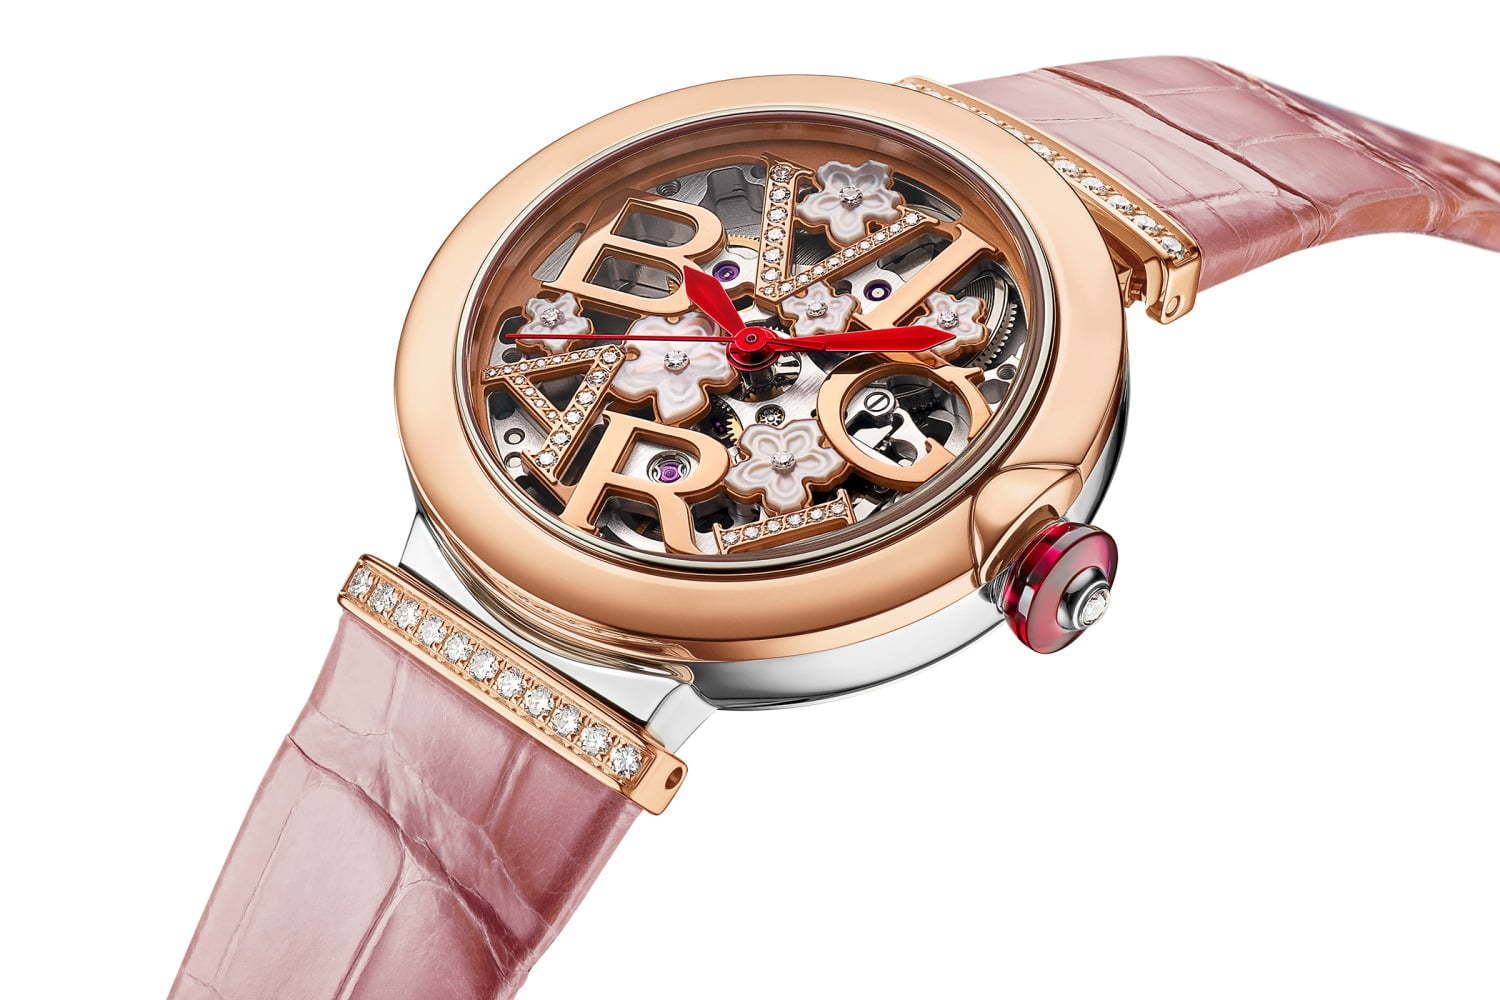 ブルガリ“桜”モチーフの日本限定腕時計「ルチェア スケルトン 桜